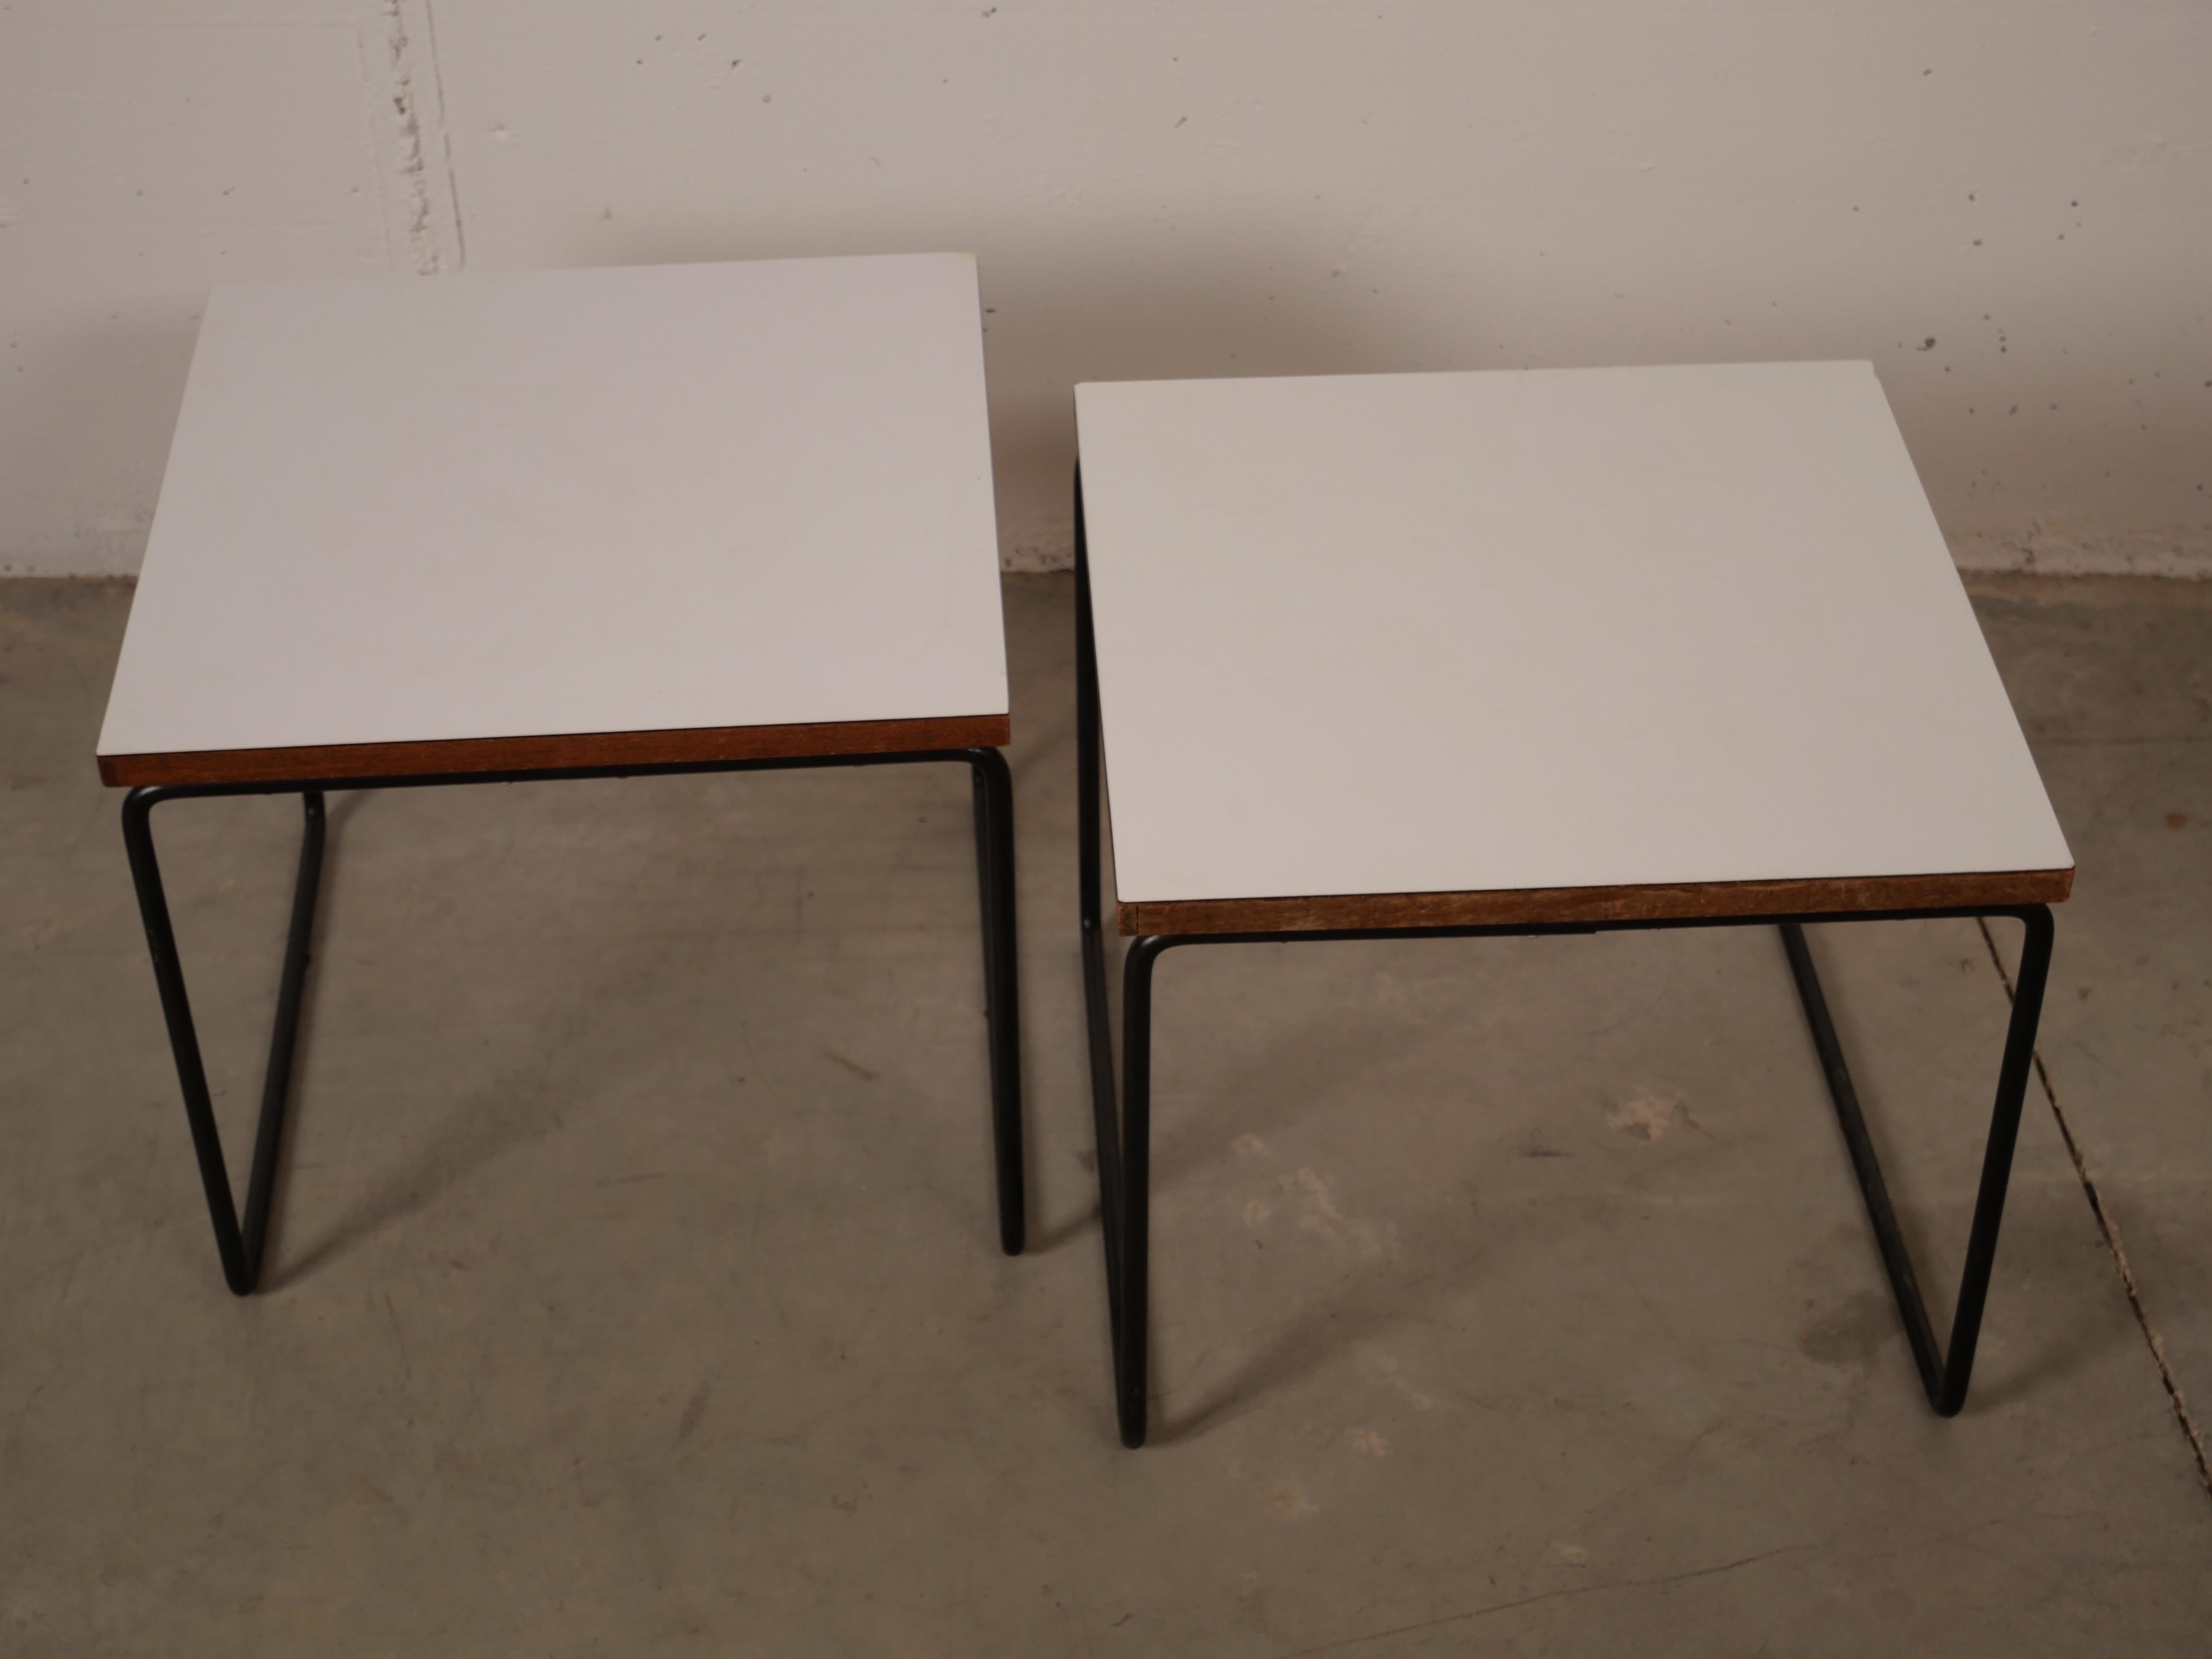 Belle paire de tables volantes blanches conçues par Pierre Guariche pour Steiner, 1955
Pierre Guariche (1925-1995) est un designer français légendaire du 20e siècle. Il a donné une touche personnelle et innovante au design en combinant esthétisme